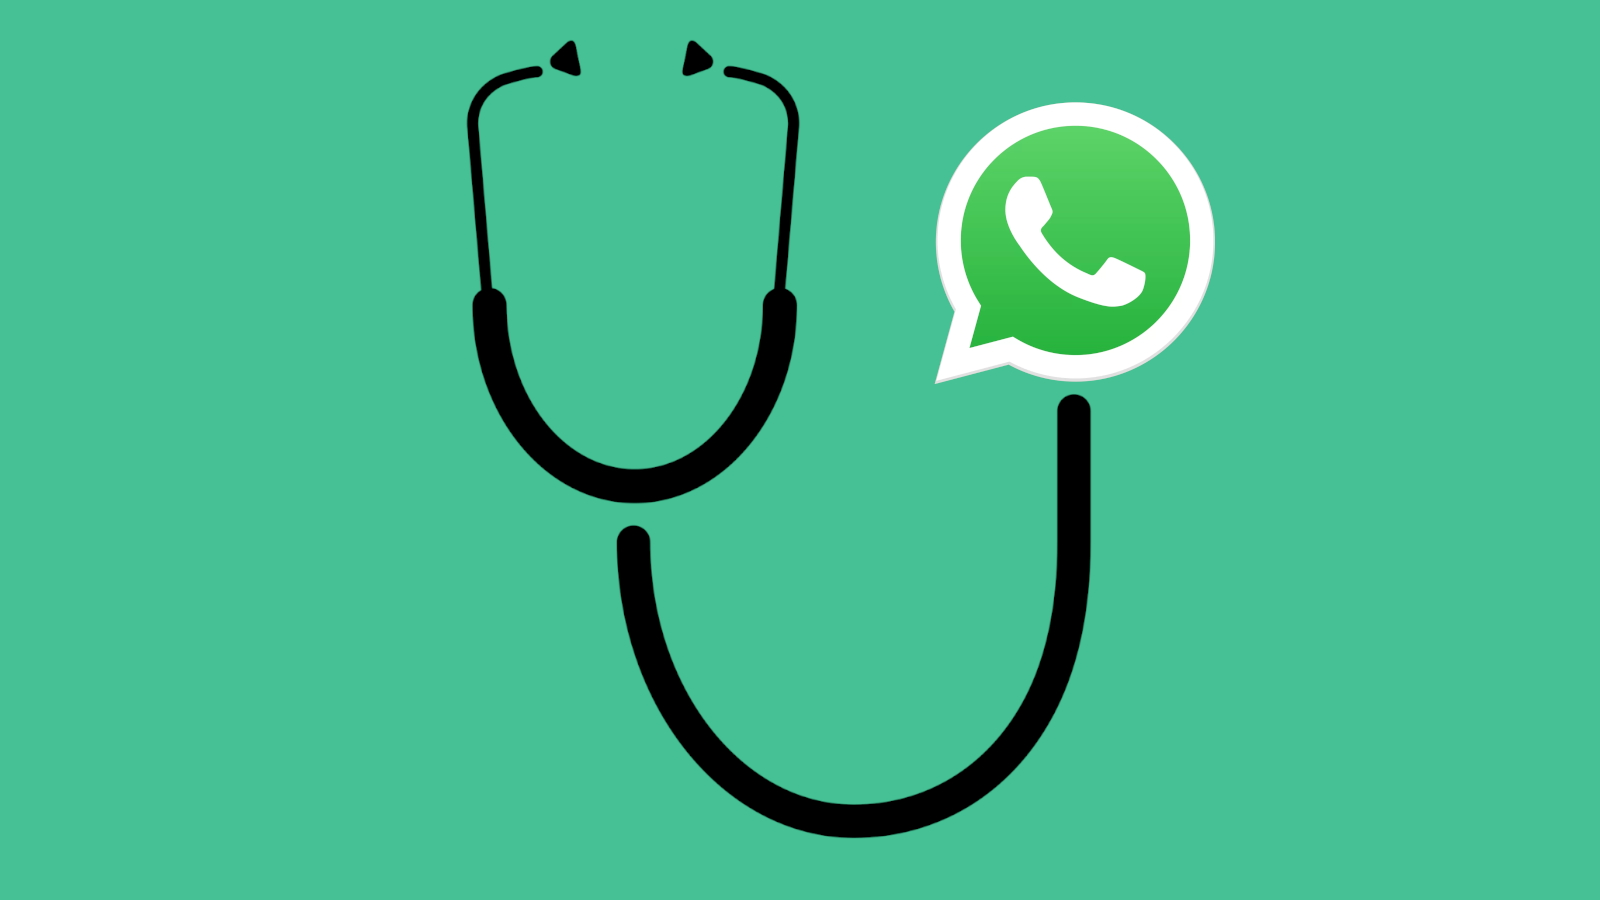 تبدأ وزارة الصحة في استخدام WhatsApp للرد على أسئلة حول فيروس التاجي (COVID-19) 188